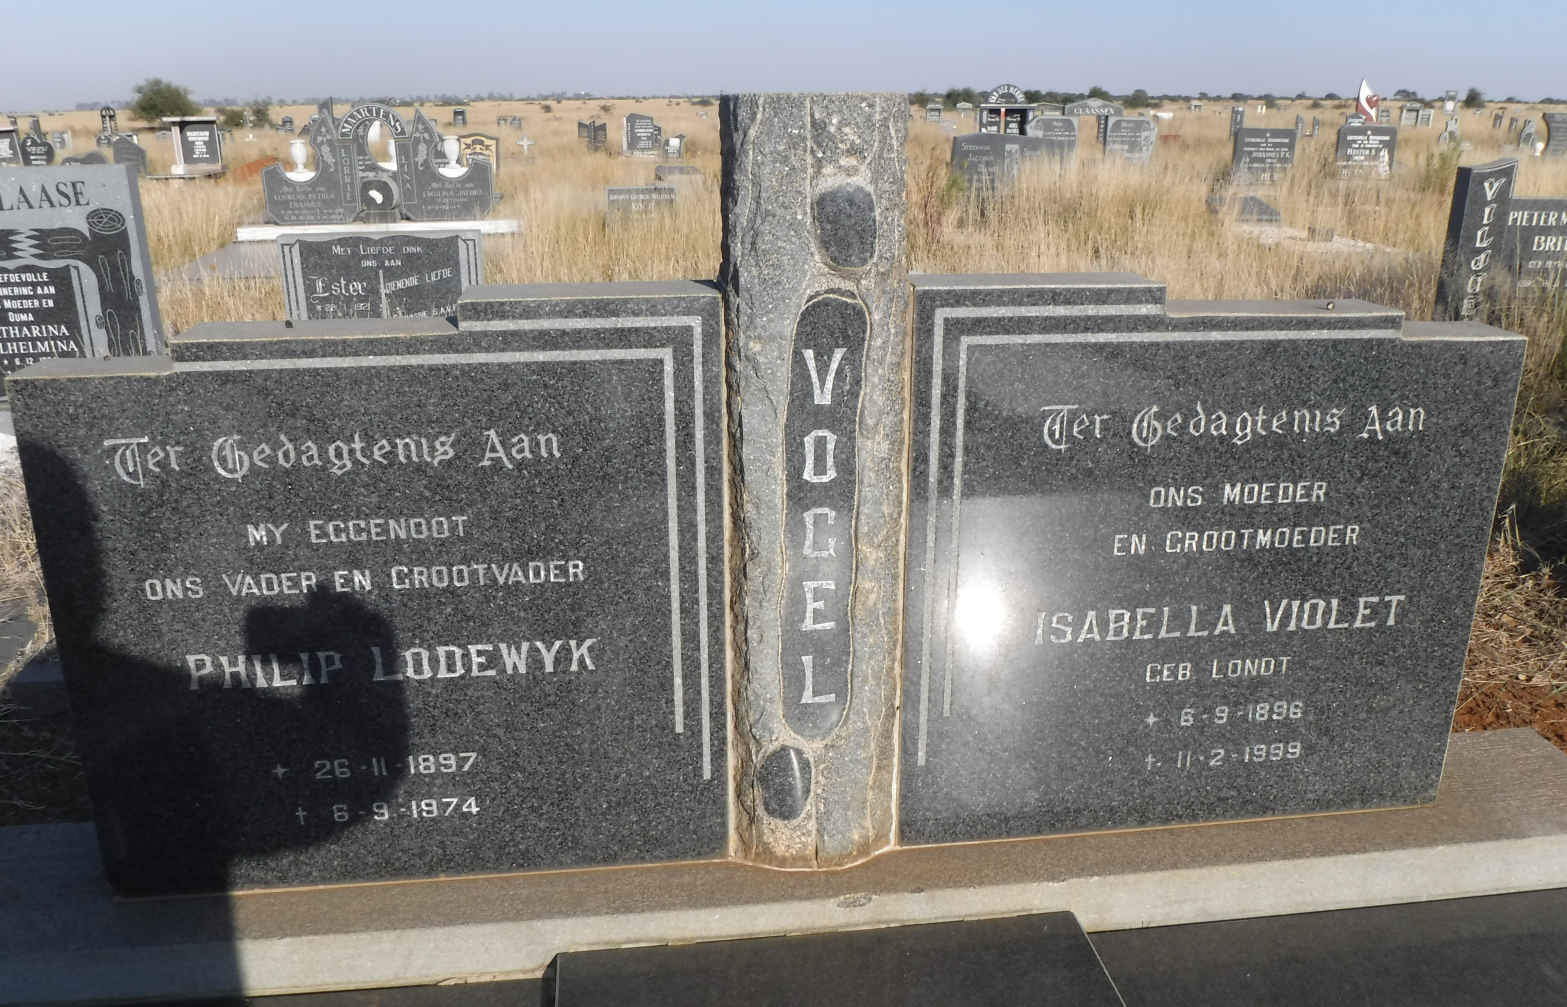 VOGEL Philip Lodewyk 1897-1974 & Isabella Violet LONDT 1896-1999